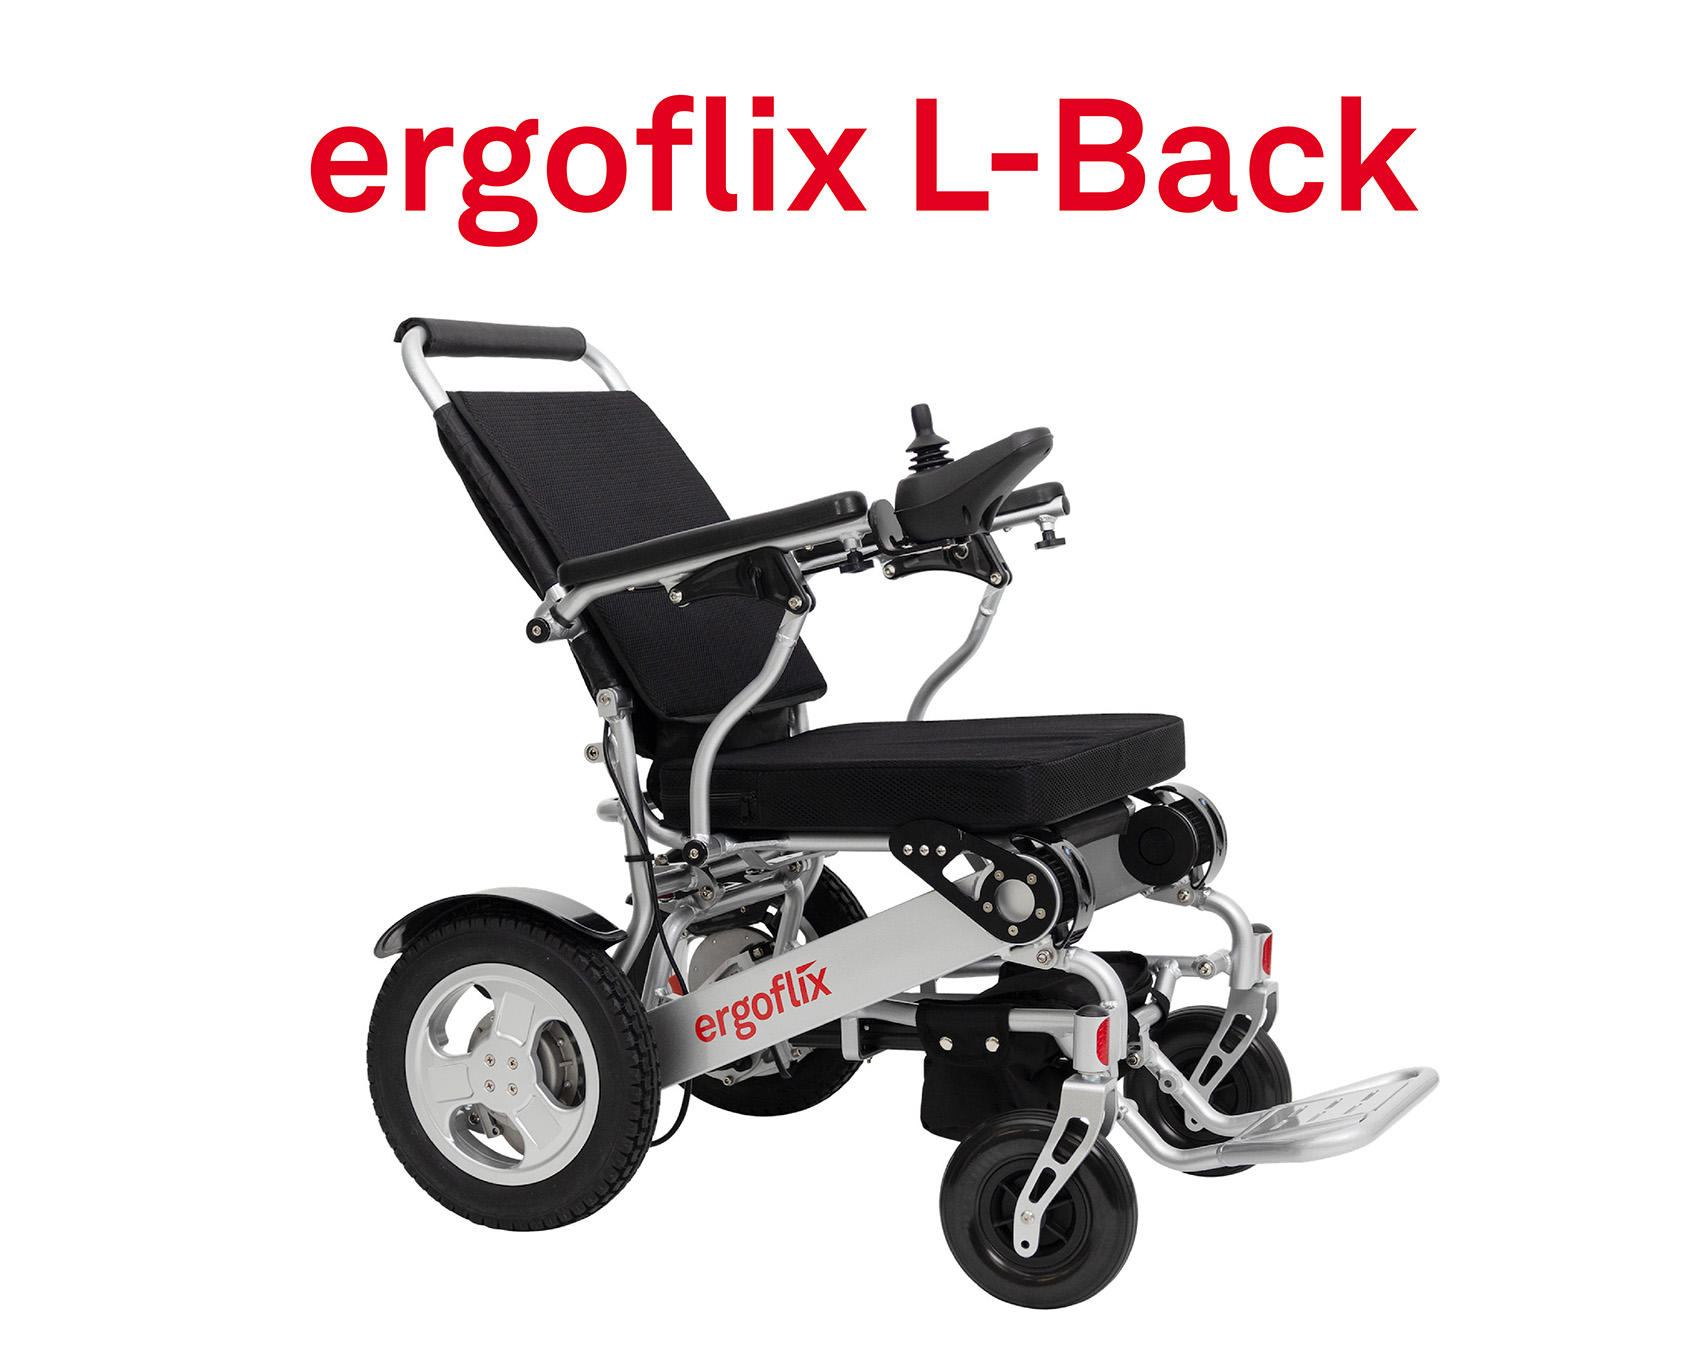 ergoflix L-Back